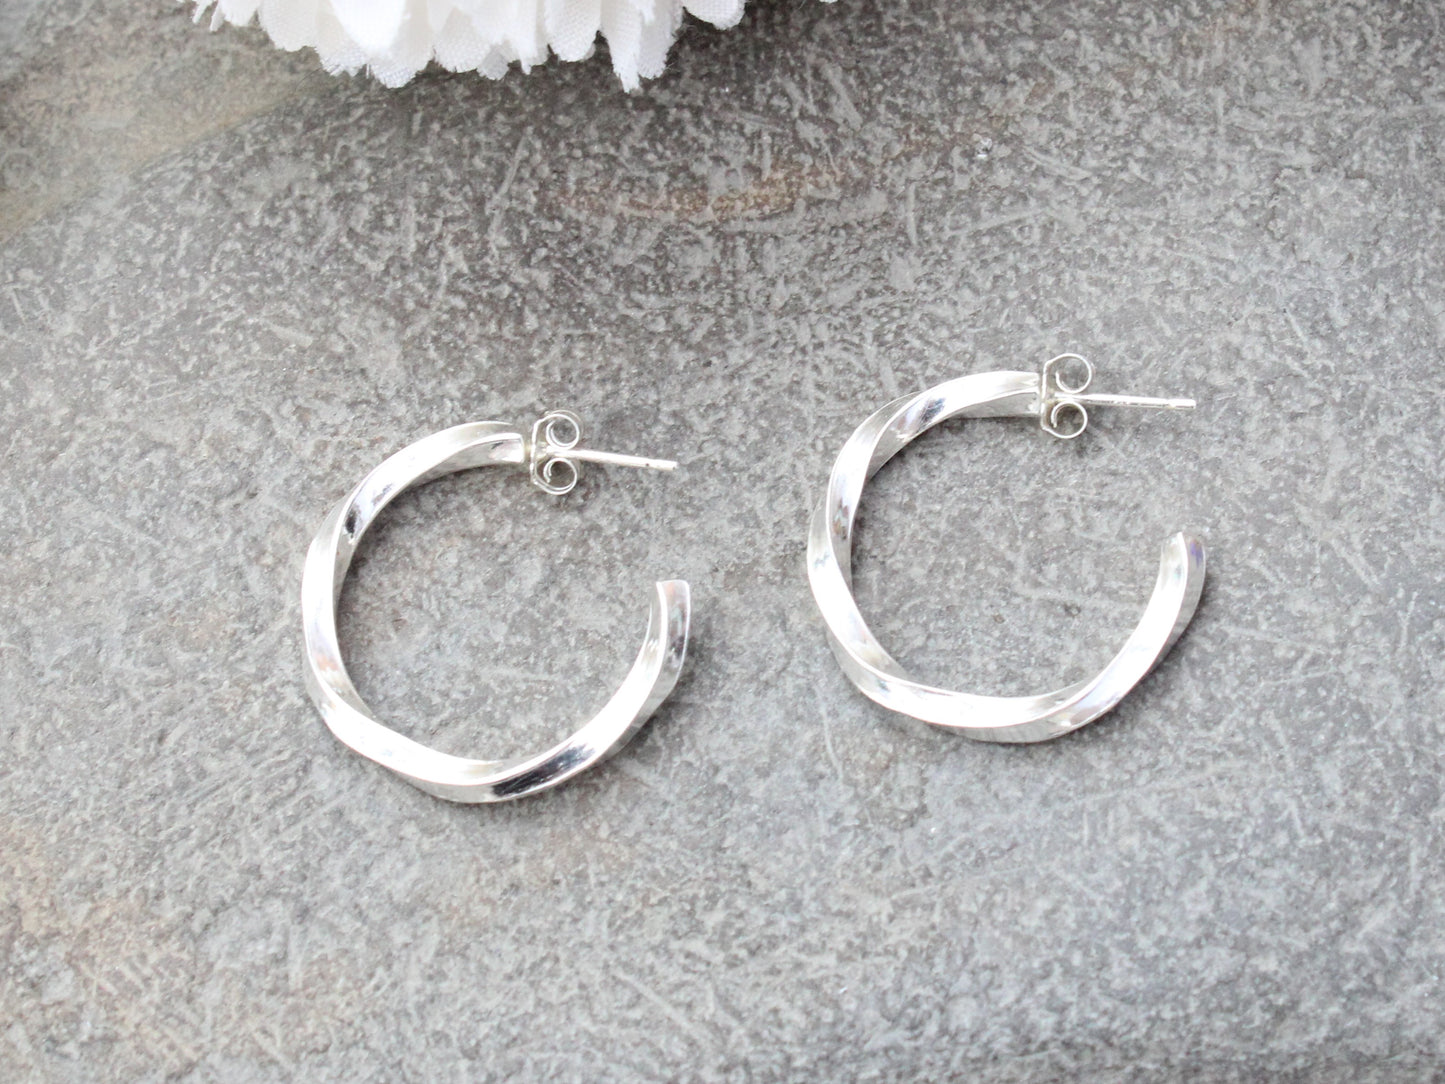 Handmade sterling silver twisted hoop earrings.